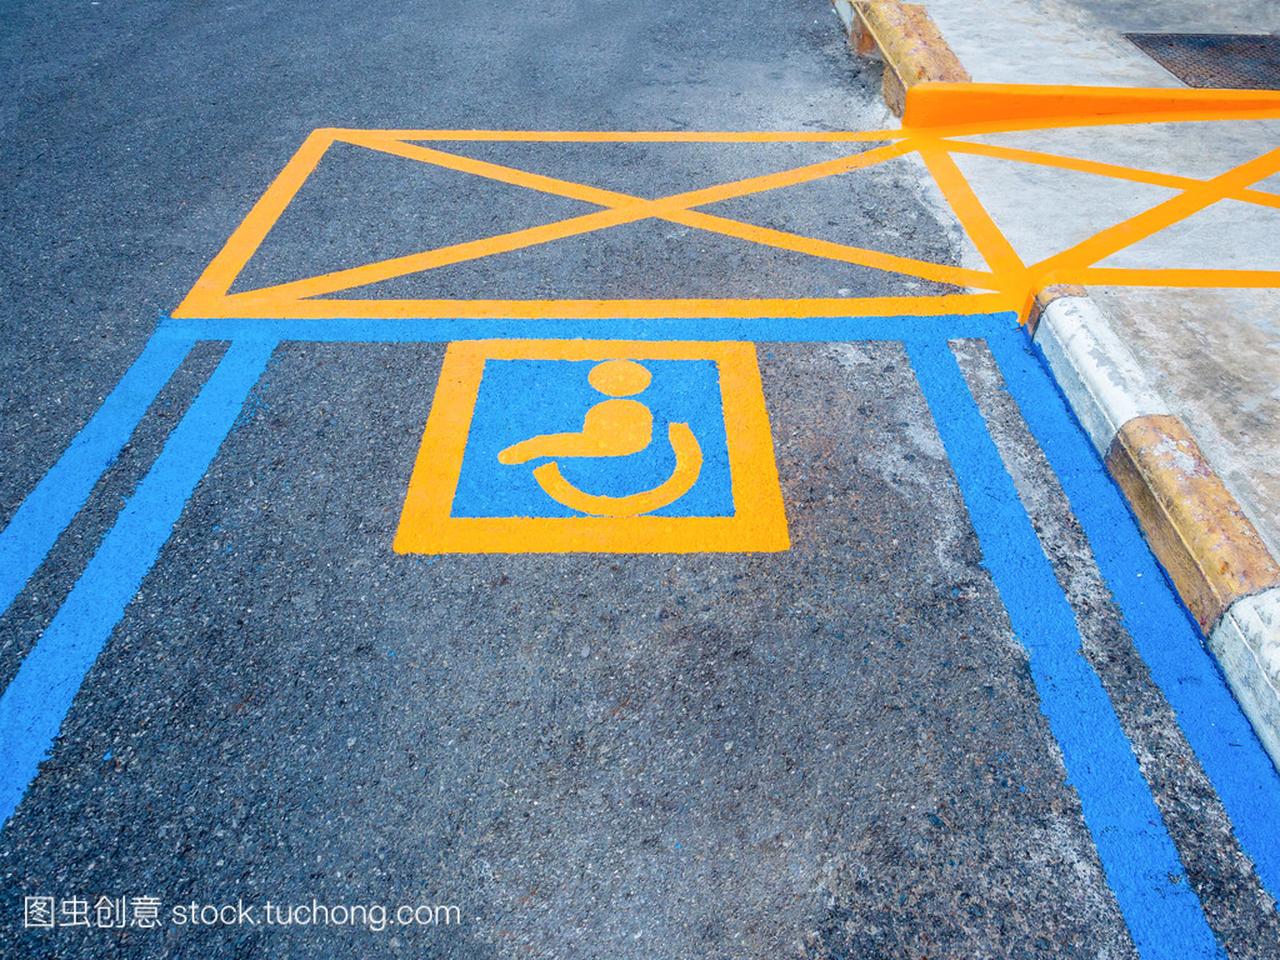 黄线标志为禁用停车道路标志